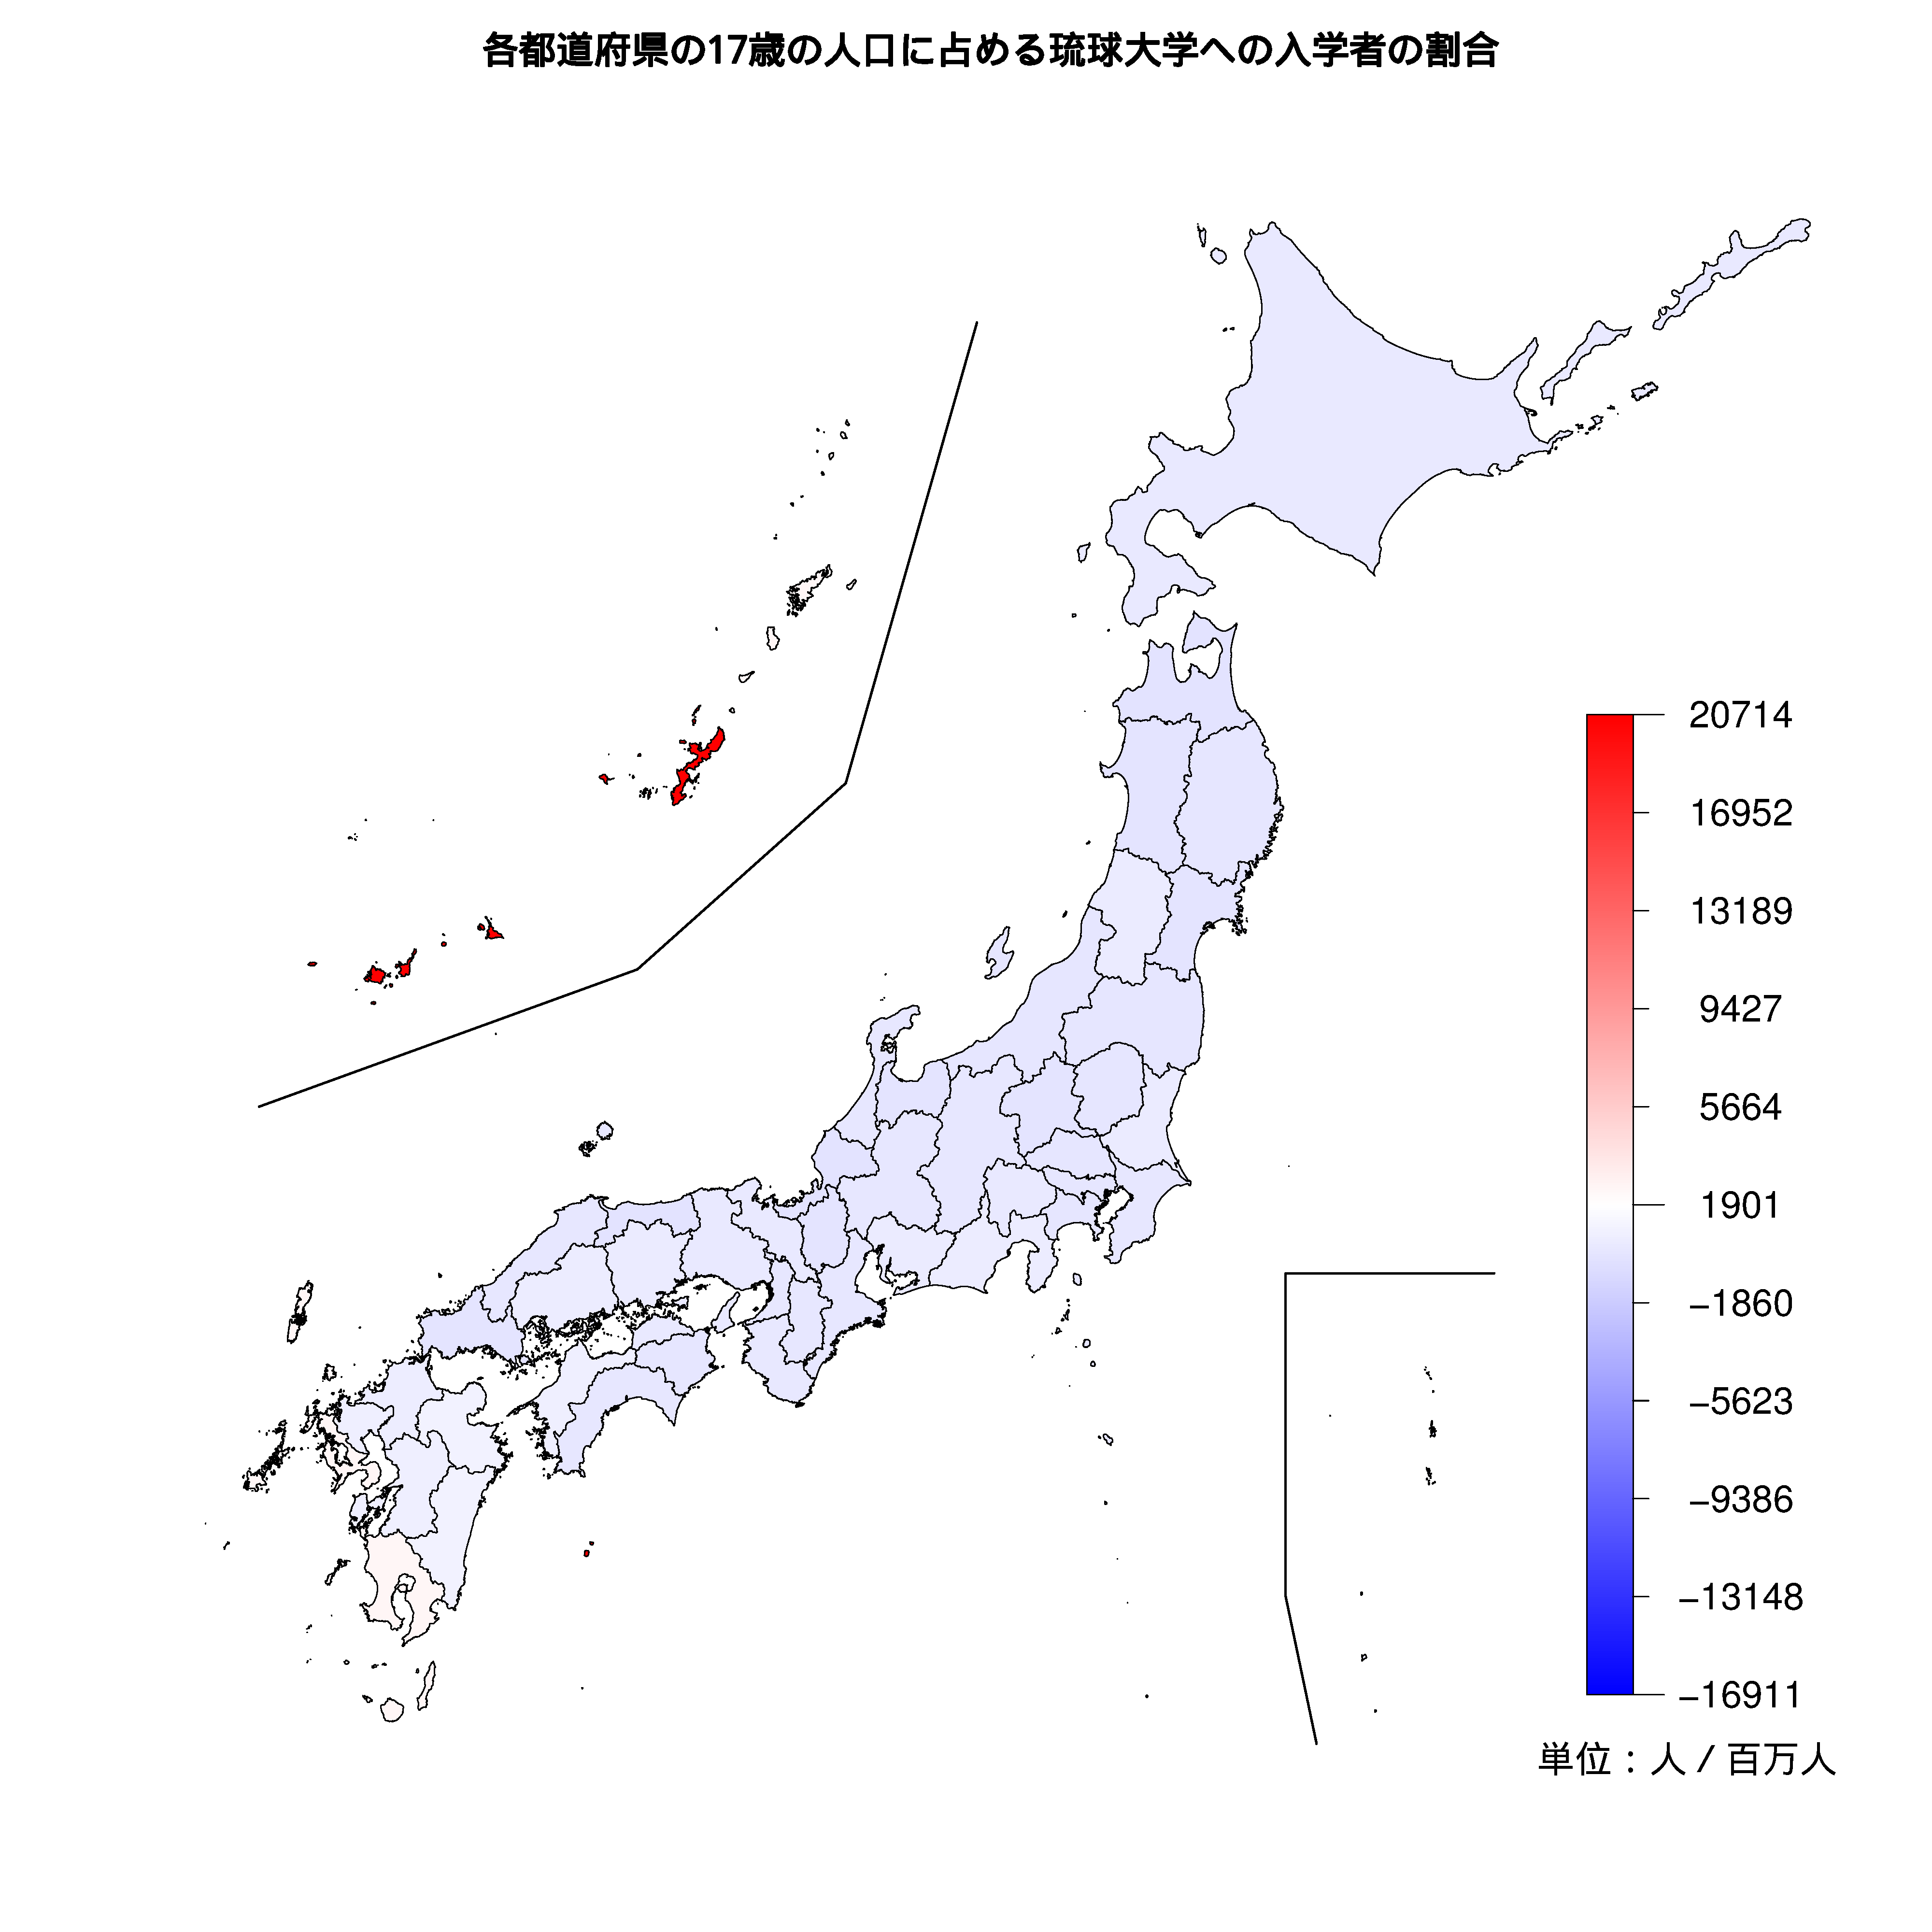 琉球大学への入学者が多い都道府県の色分け地図